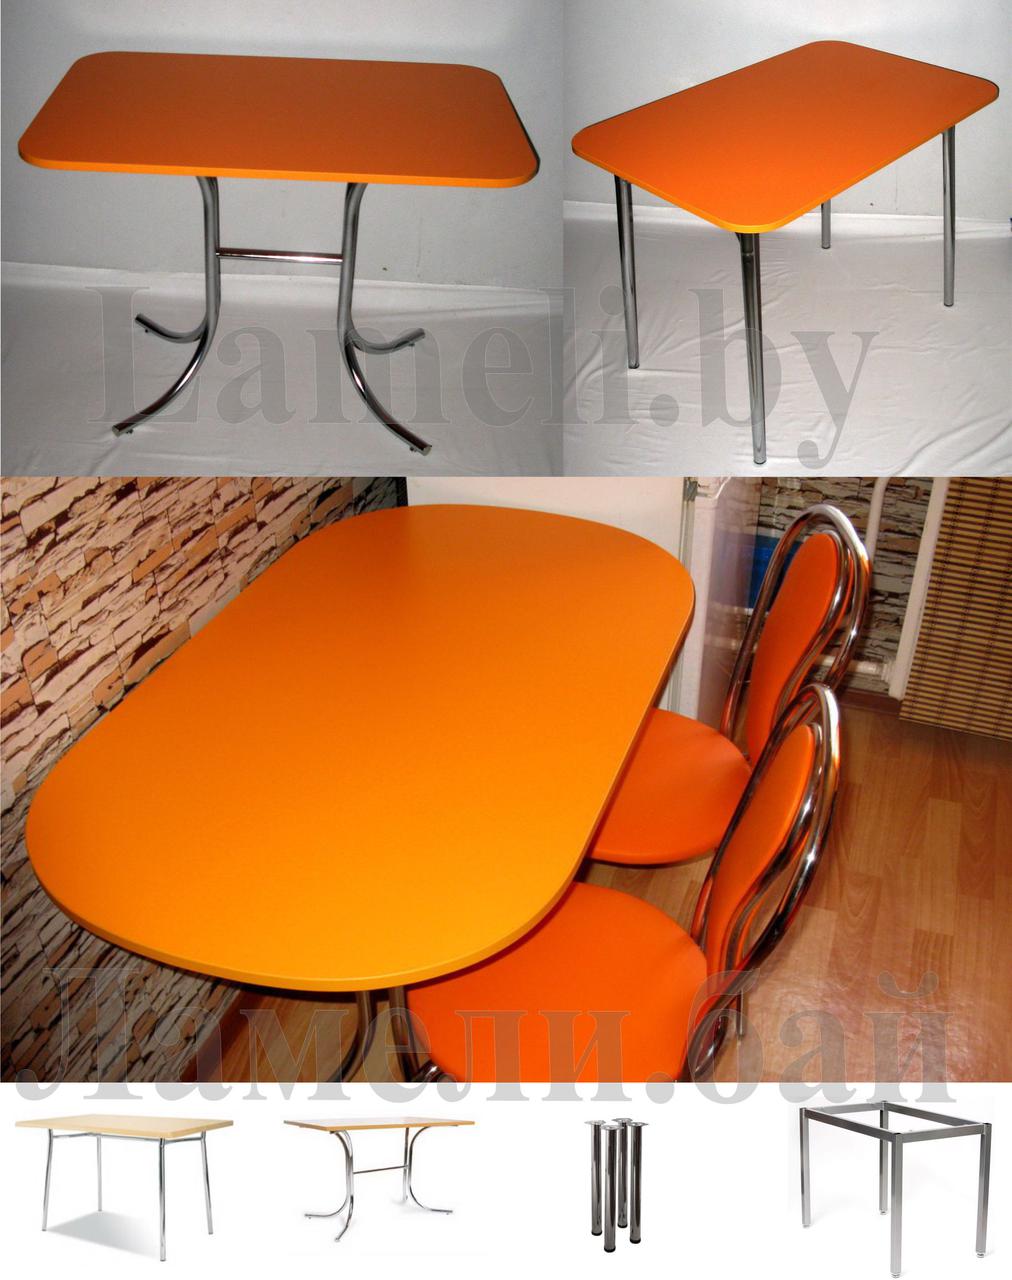 Стол кухонный обеденный овальный цвета Оранжевый на 4 видах ног. Любые размеры! Доставка по Беларуси